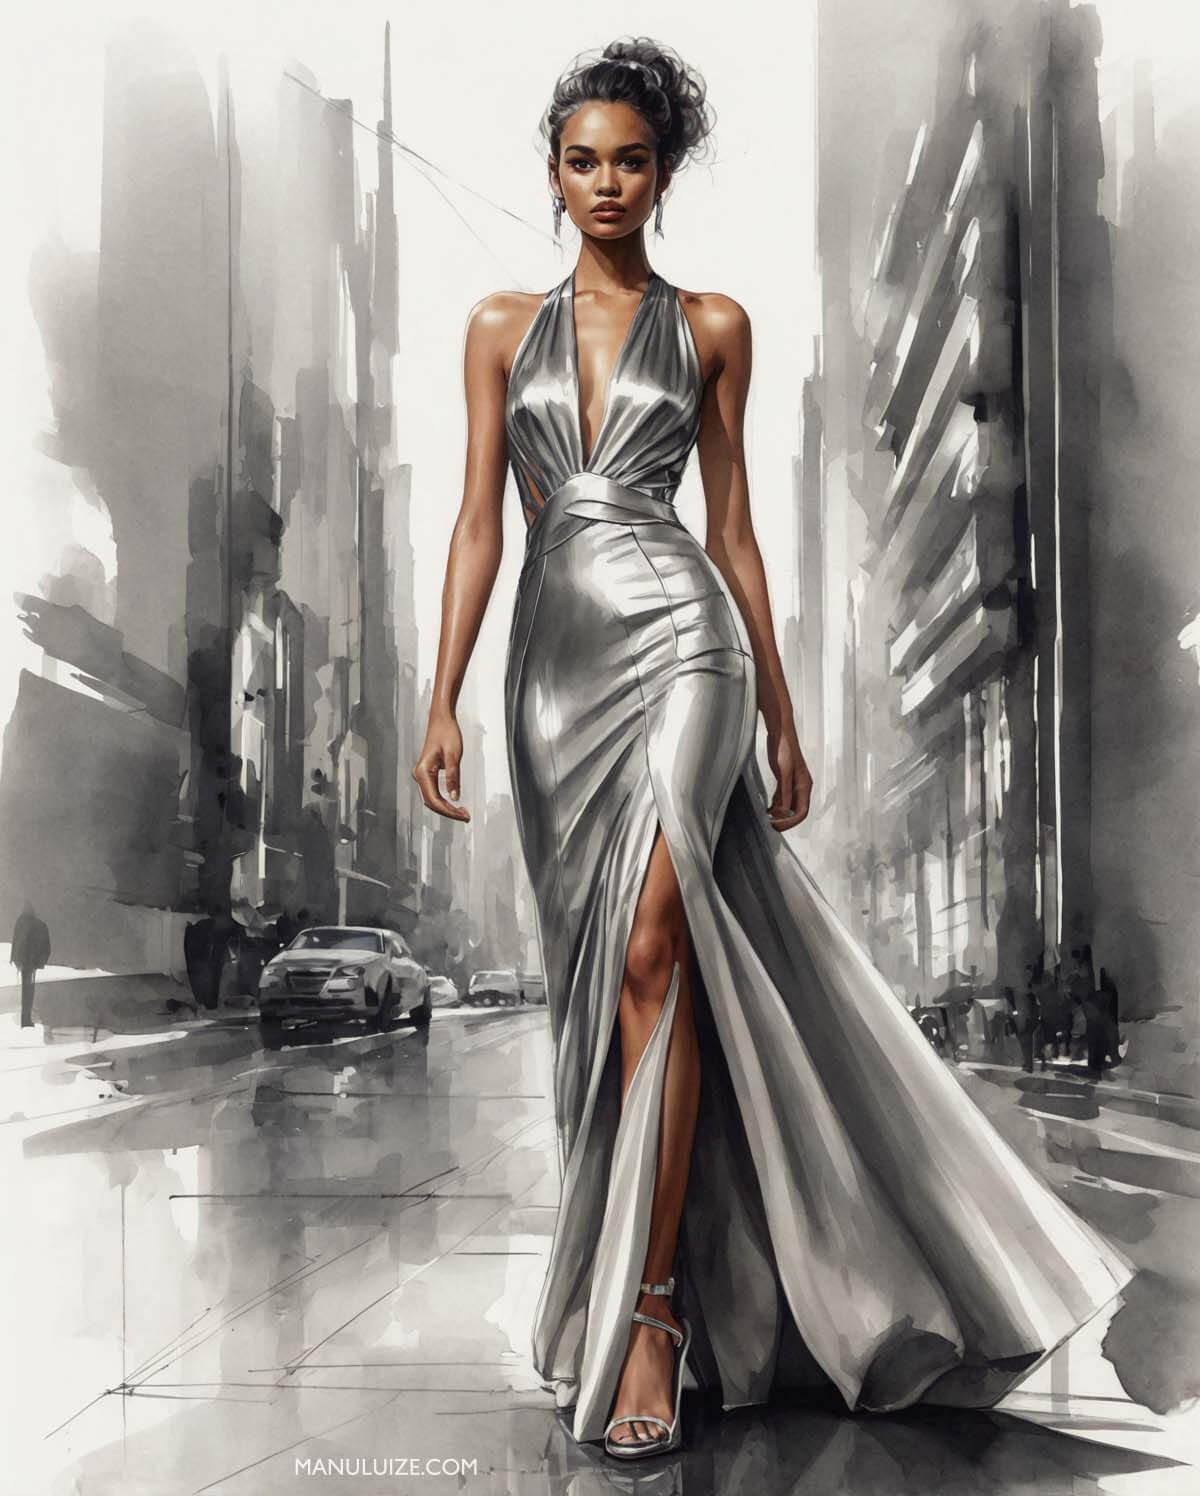 Ilustração de moda: vestido metalizado